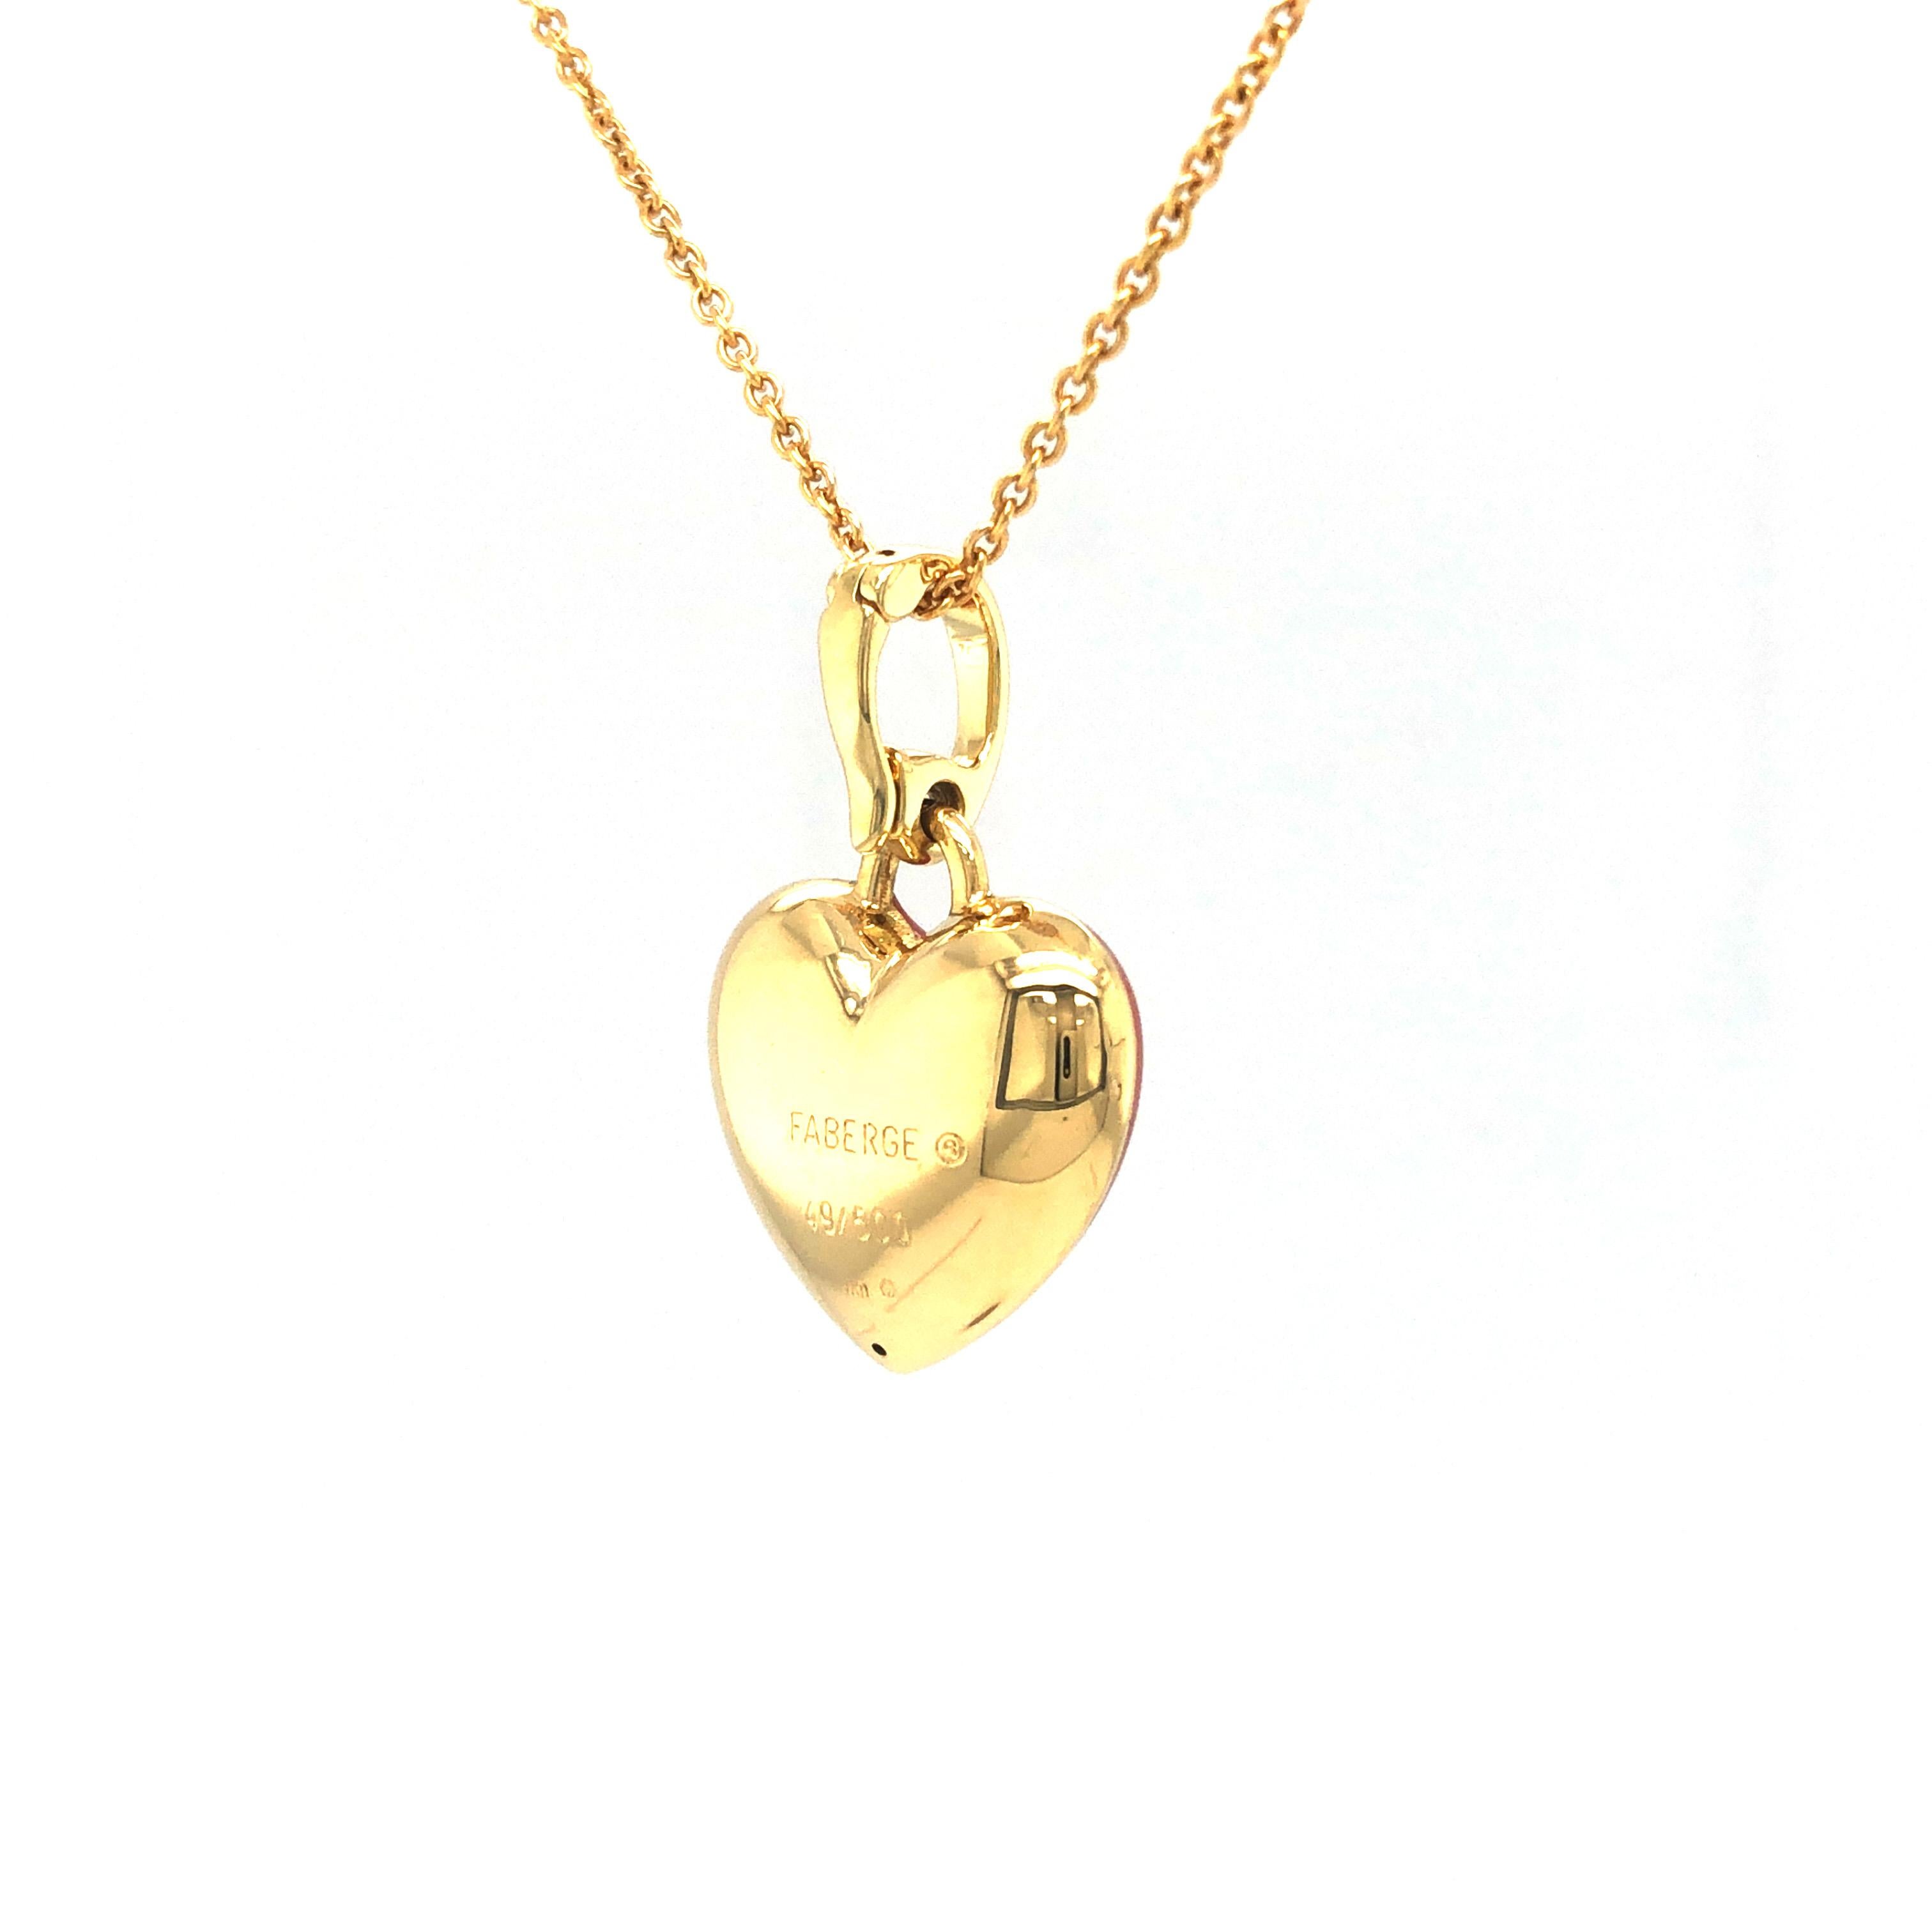 Brilliant Cut Fabergé Heart Pendant  Necklace Pink Enamel & Paillons 18k Yellow Gold 1 Diam. For Sale